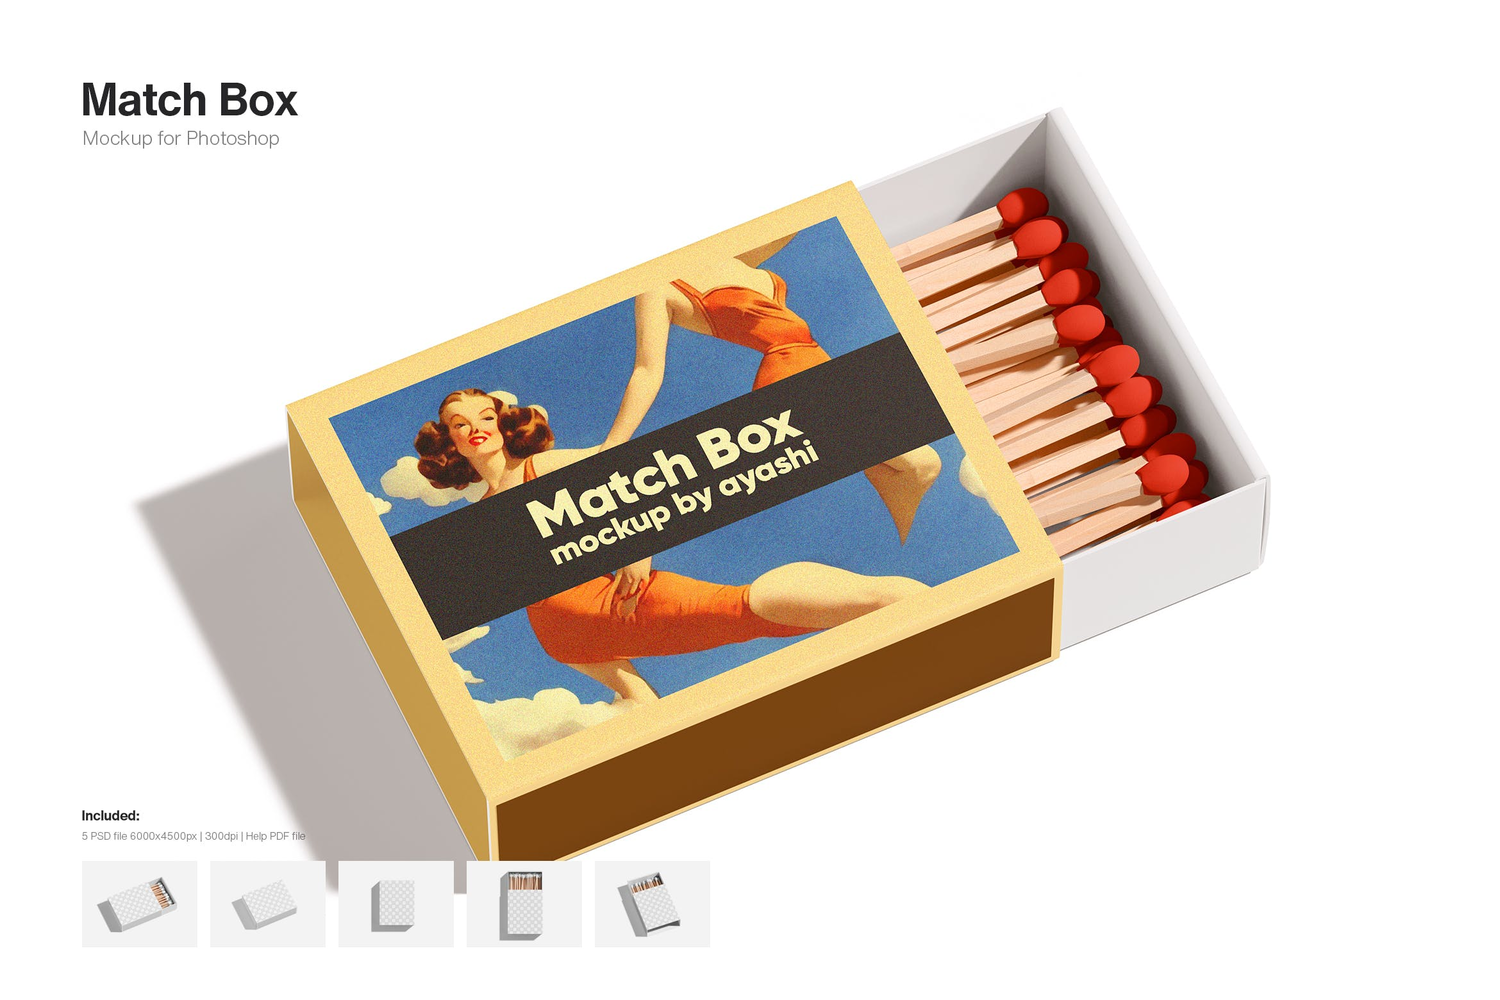 3322 火柴盒外观包装设计模板PSD样机素材 Match Box Mockup